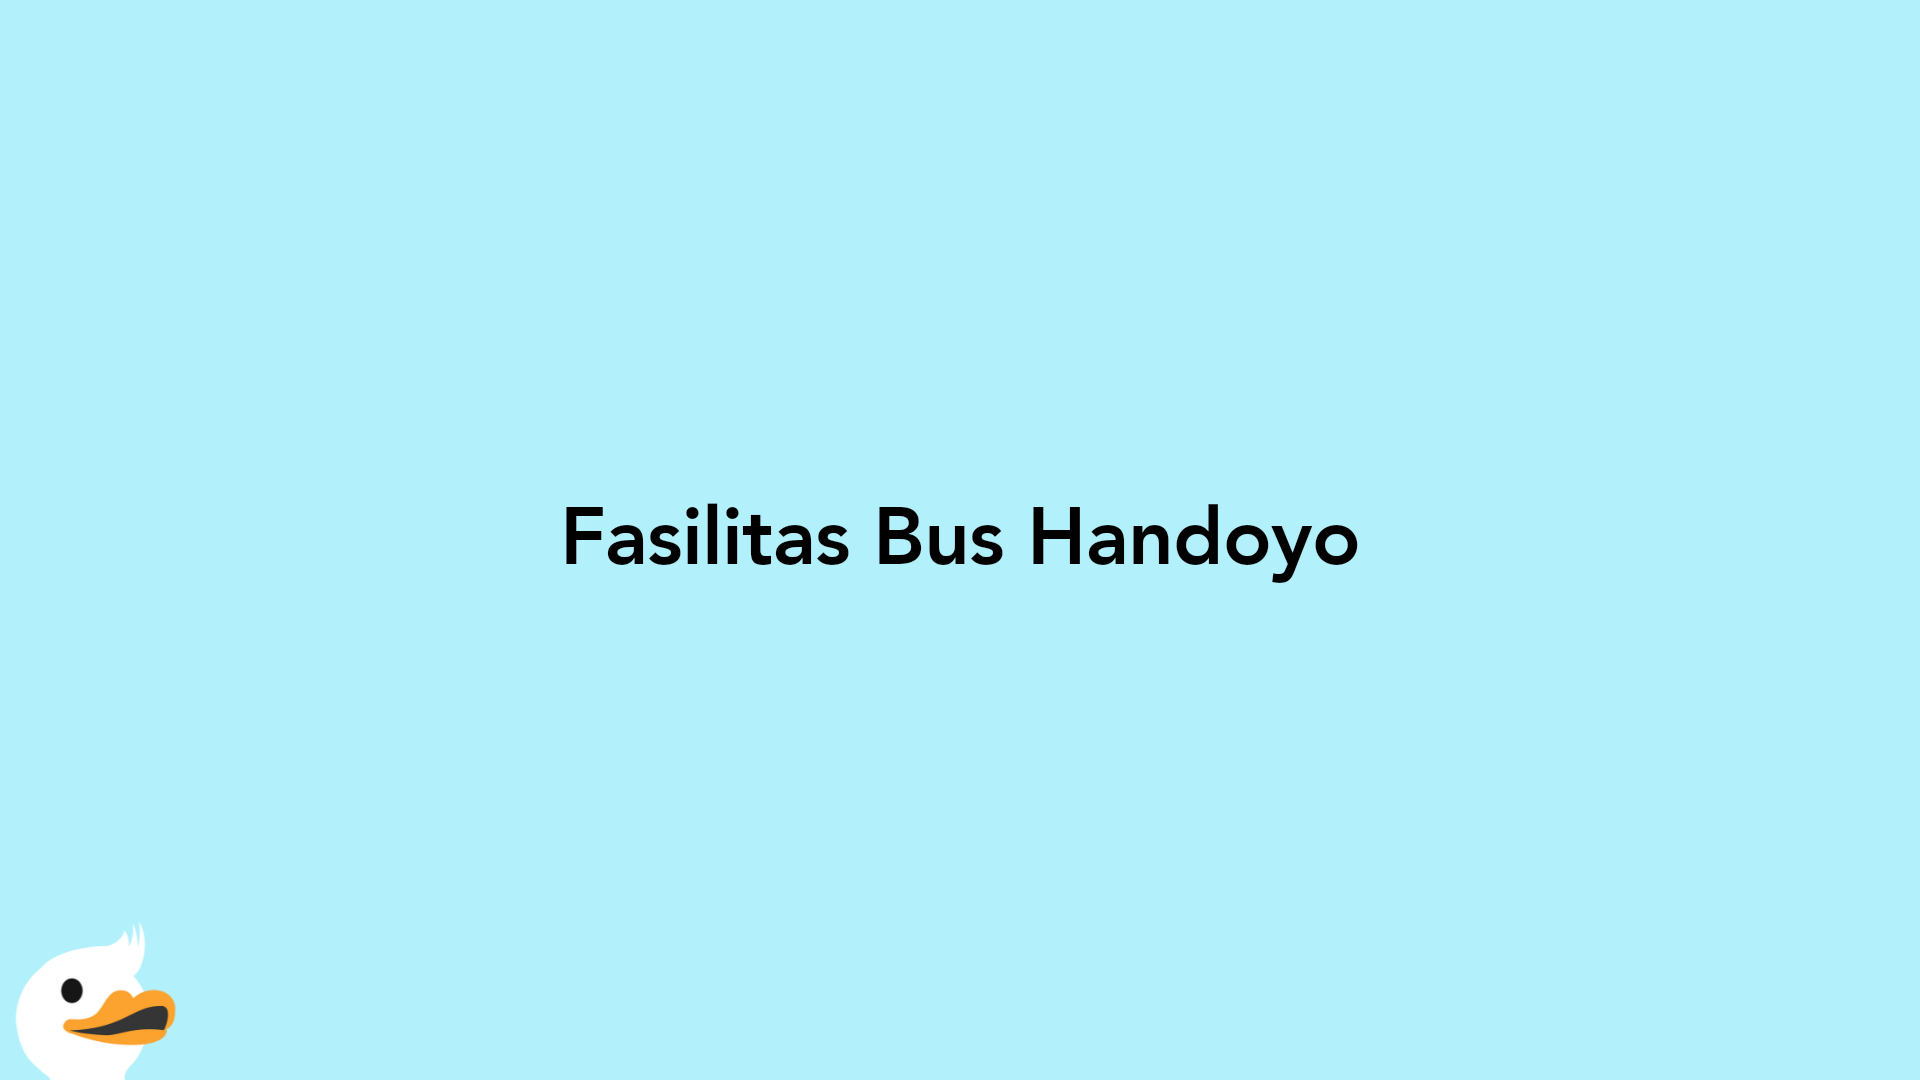 Fasilitas Bus Handoyo